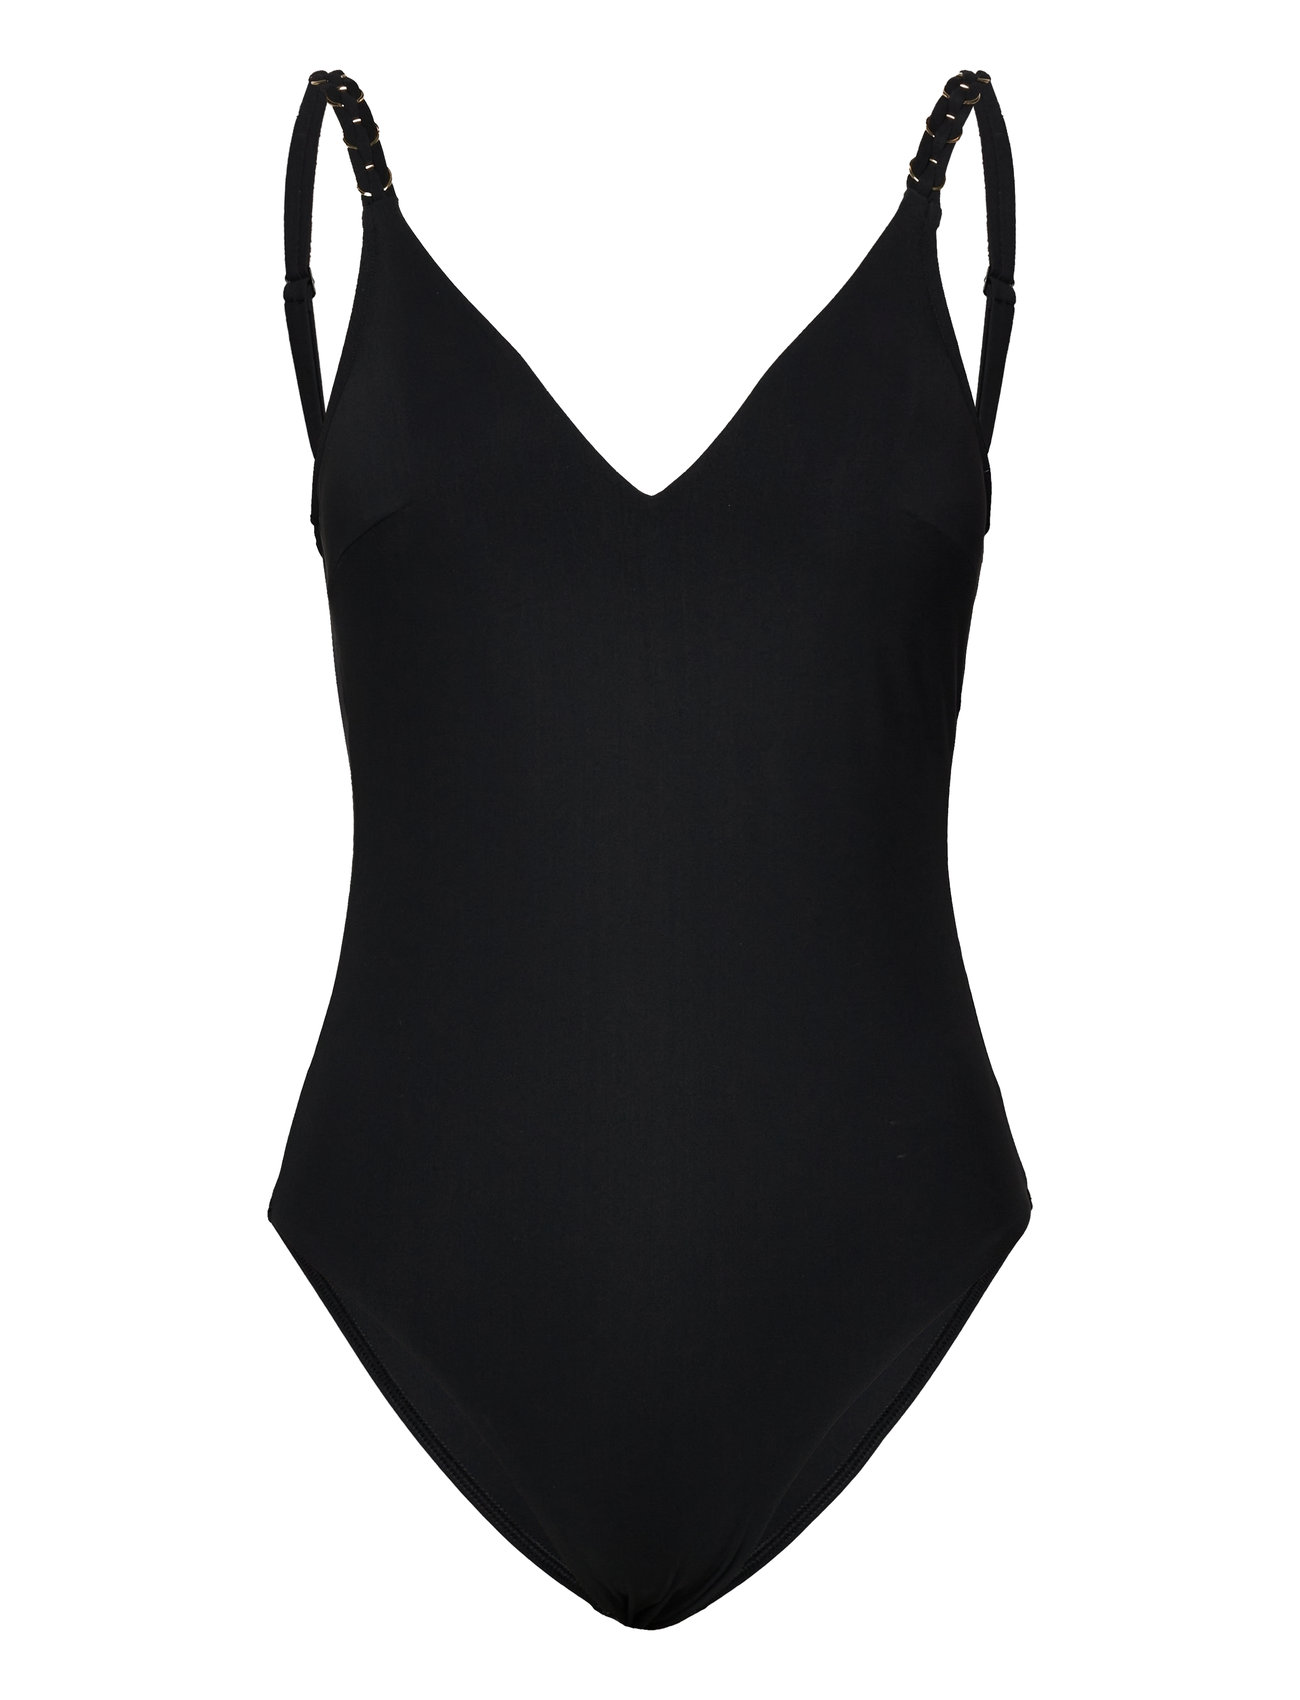 Emblem Bikini Wirefree Triangle Spacer Swimsuit Baddräkt Badkläder Black Chantelle Beach